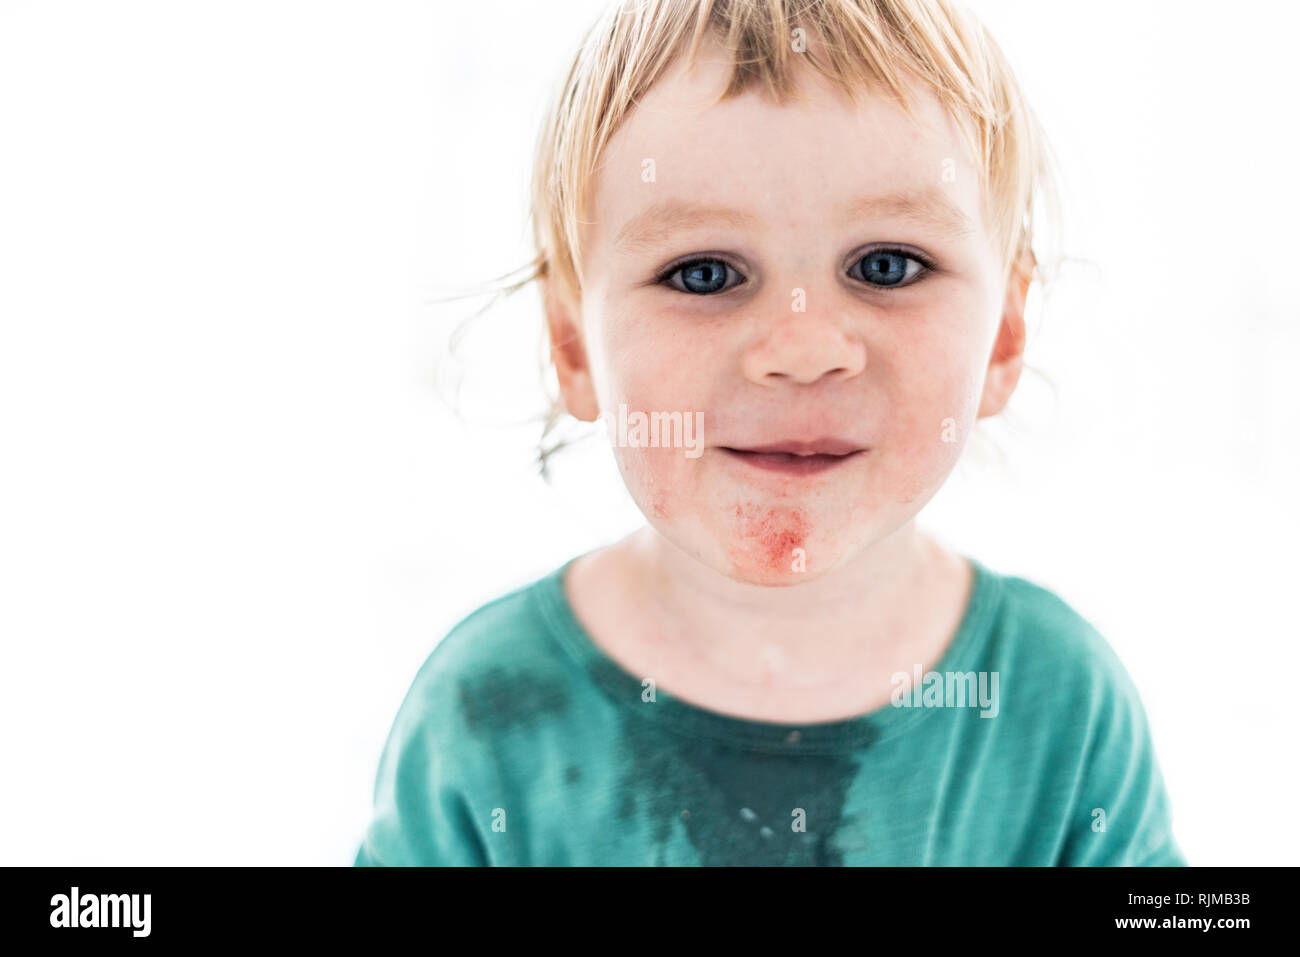 Un bonito retrato artístico de un joven muchacho sonriente con ojos azules que acaba de comer sandía. El niño está mirando directamente a la cámara. Foto de stock